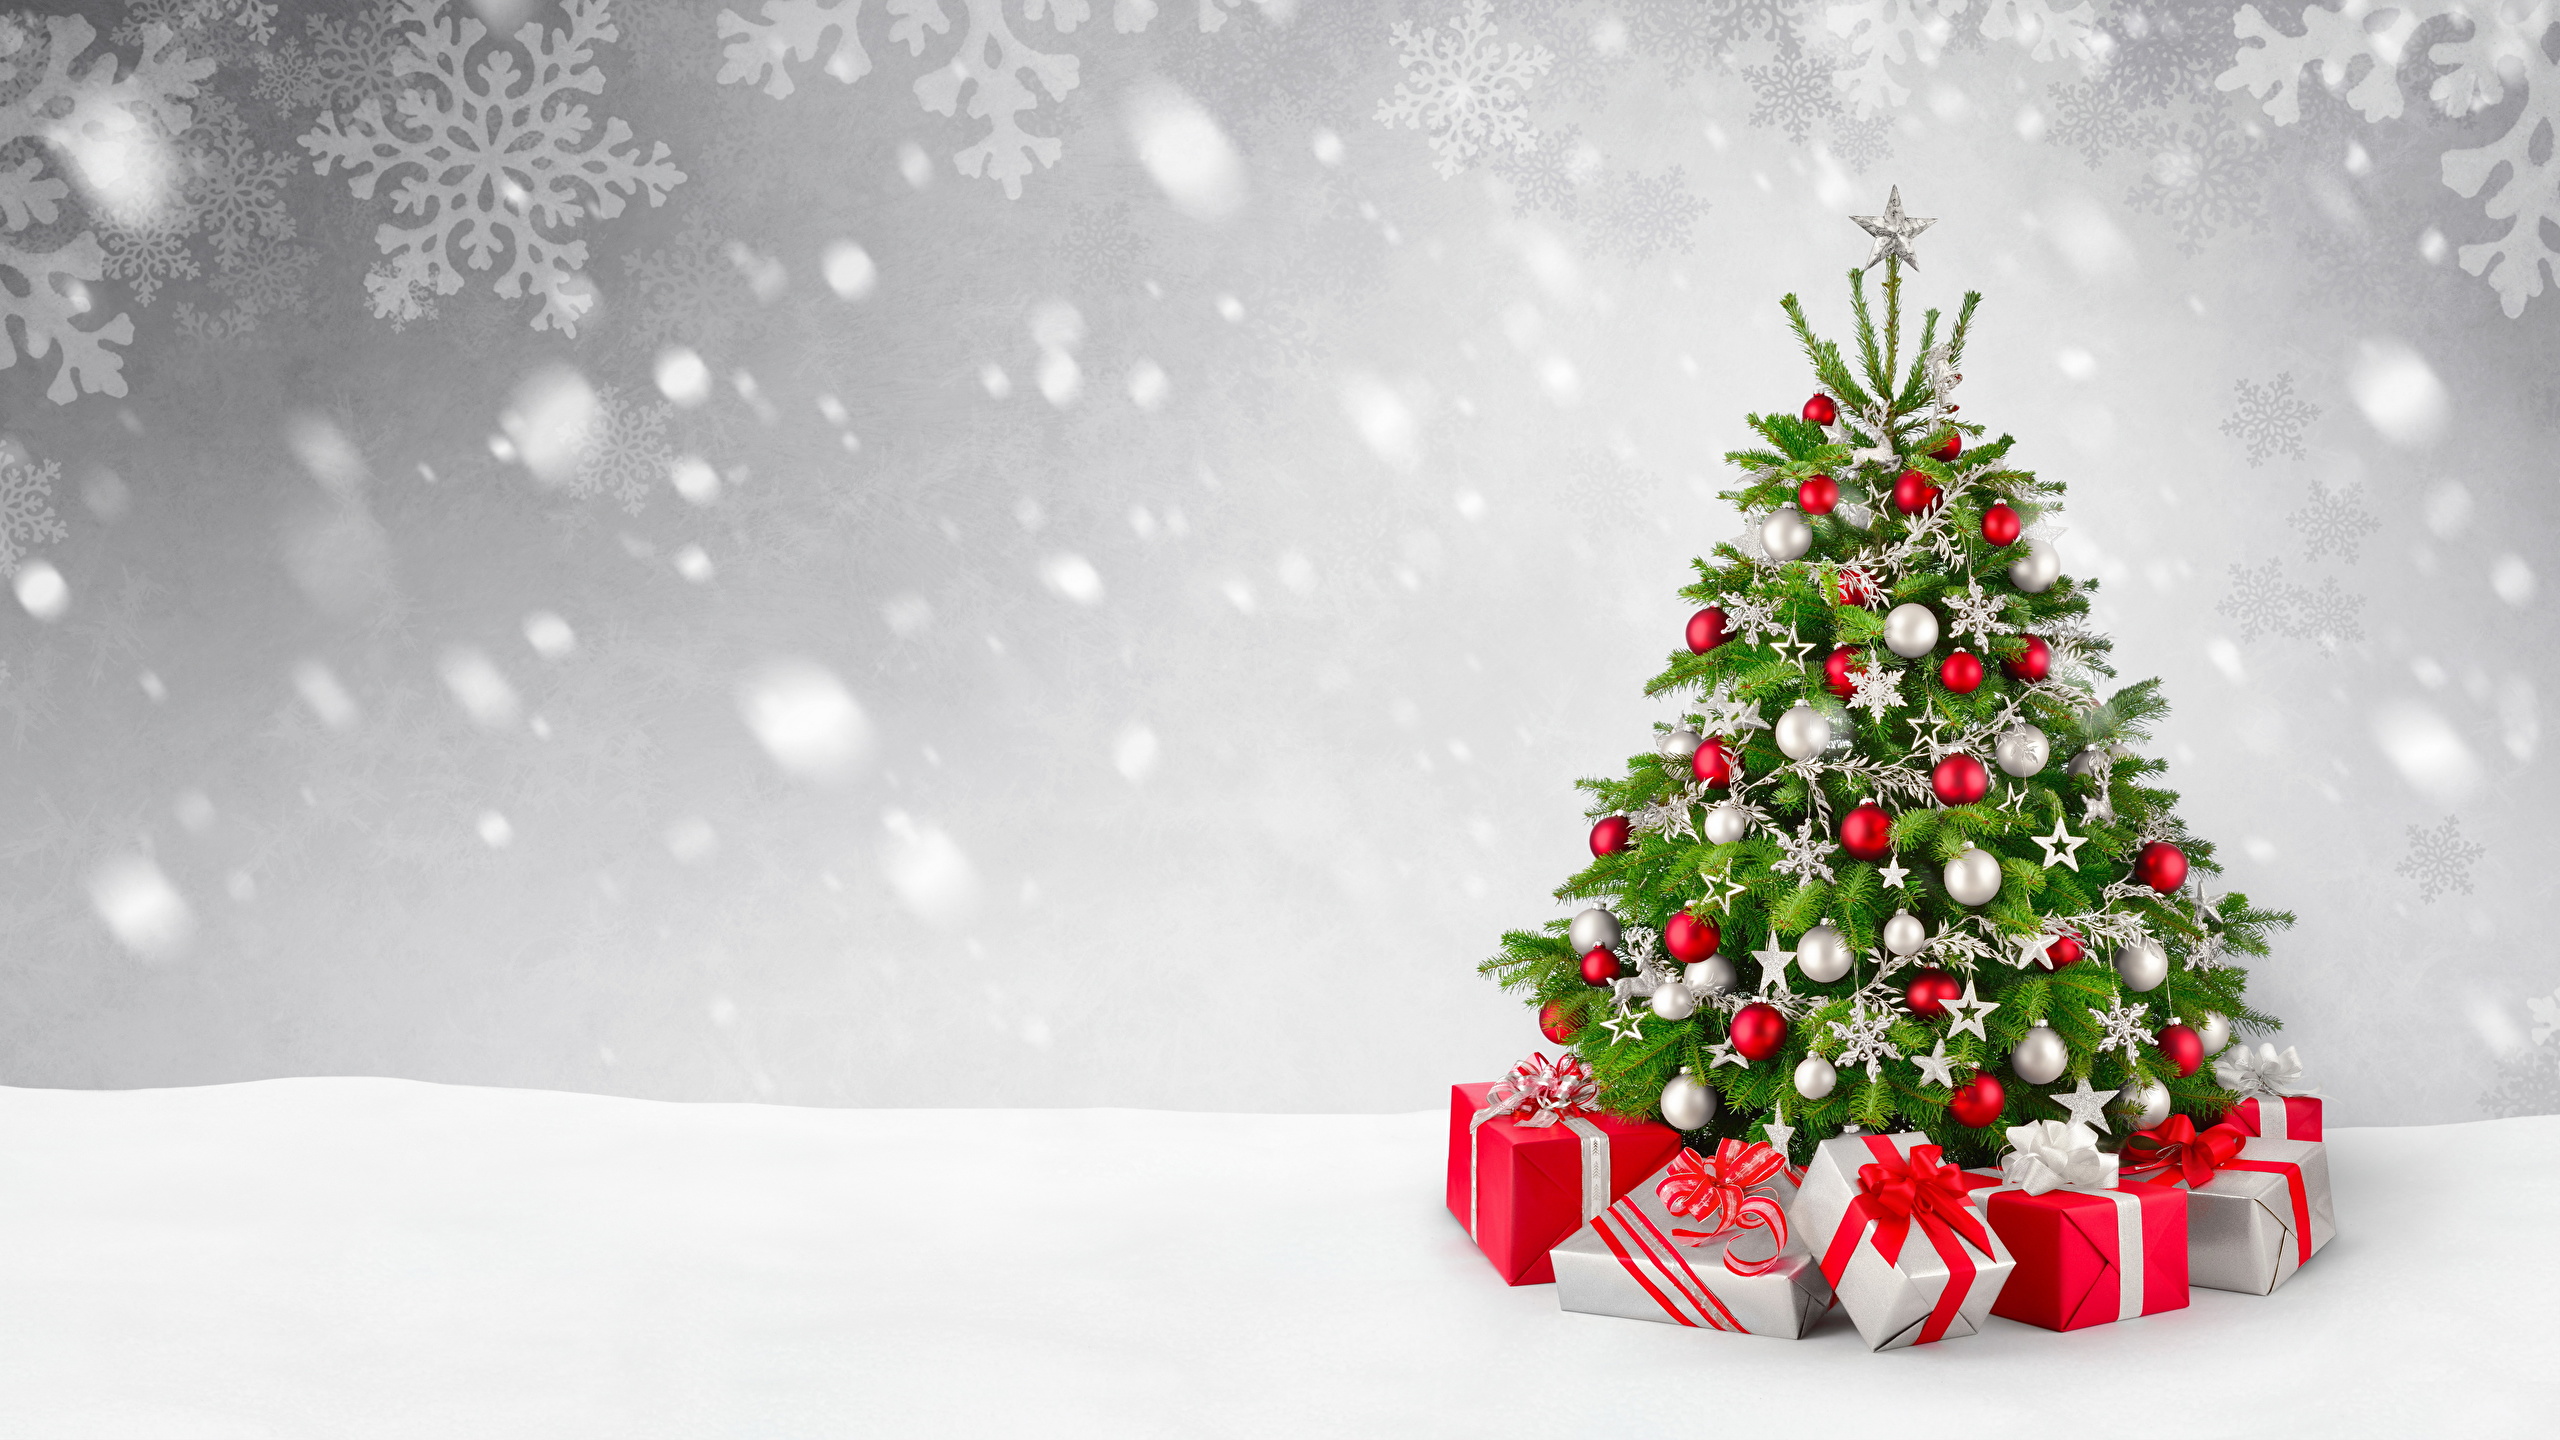 Christmas Christmas Tree Gift 2560x1440